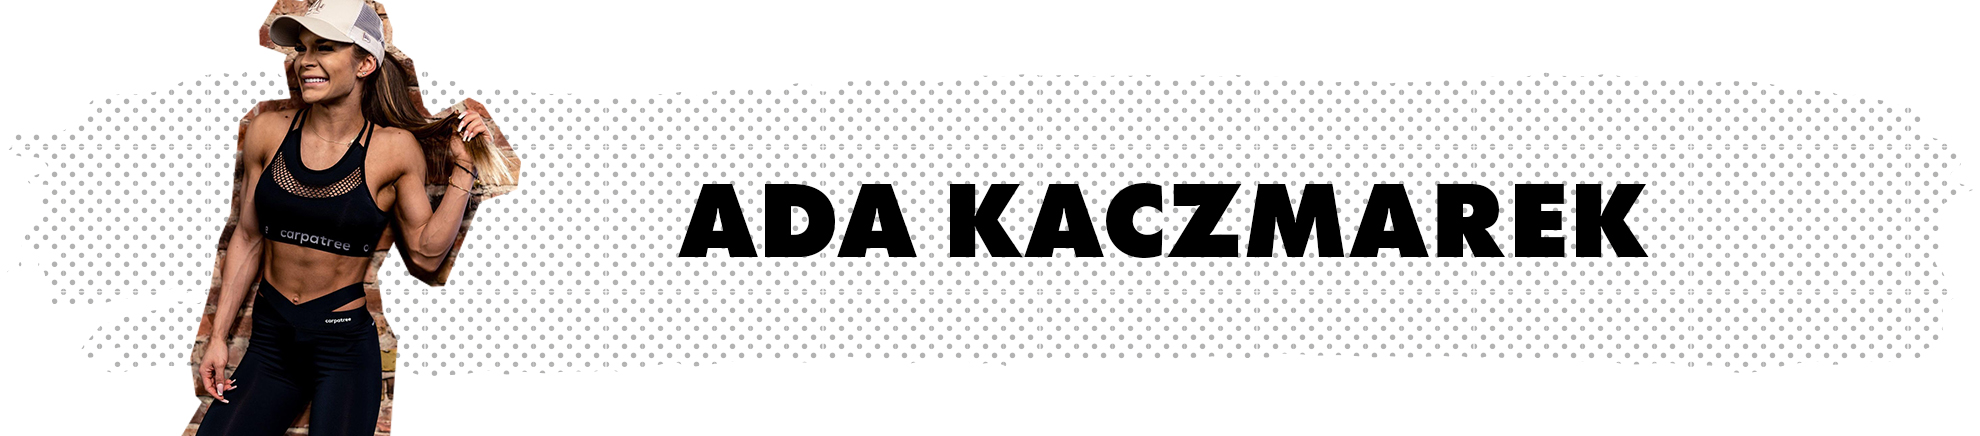 Ada Kaczmarek - Carpatree brand ambassador